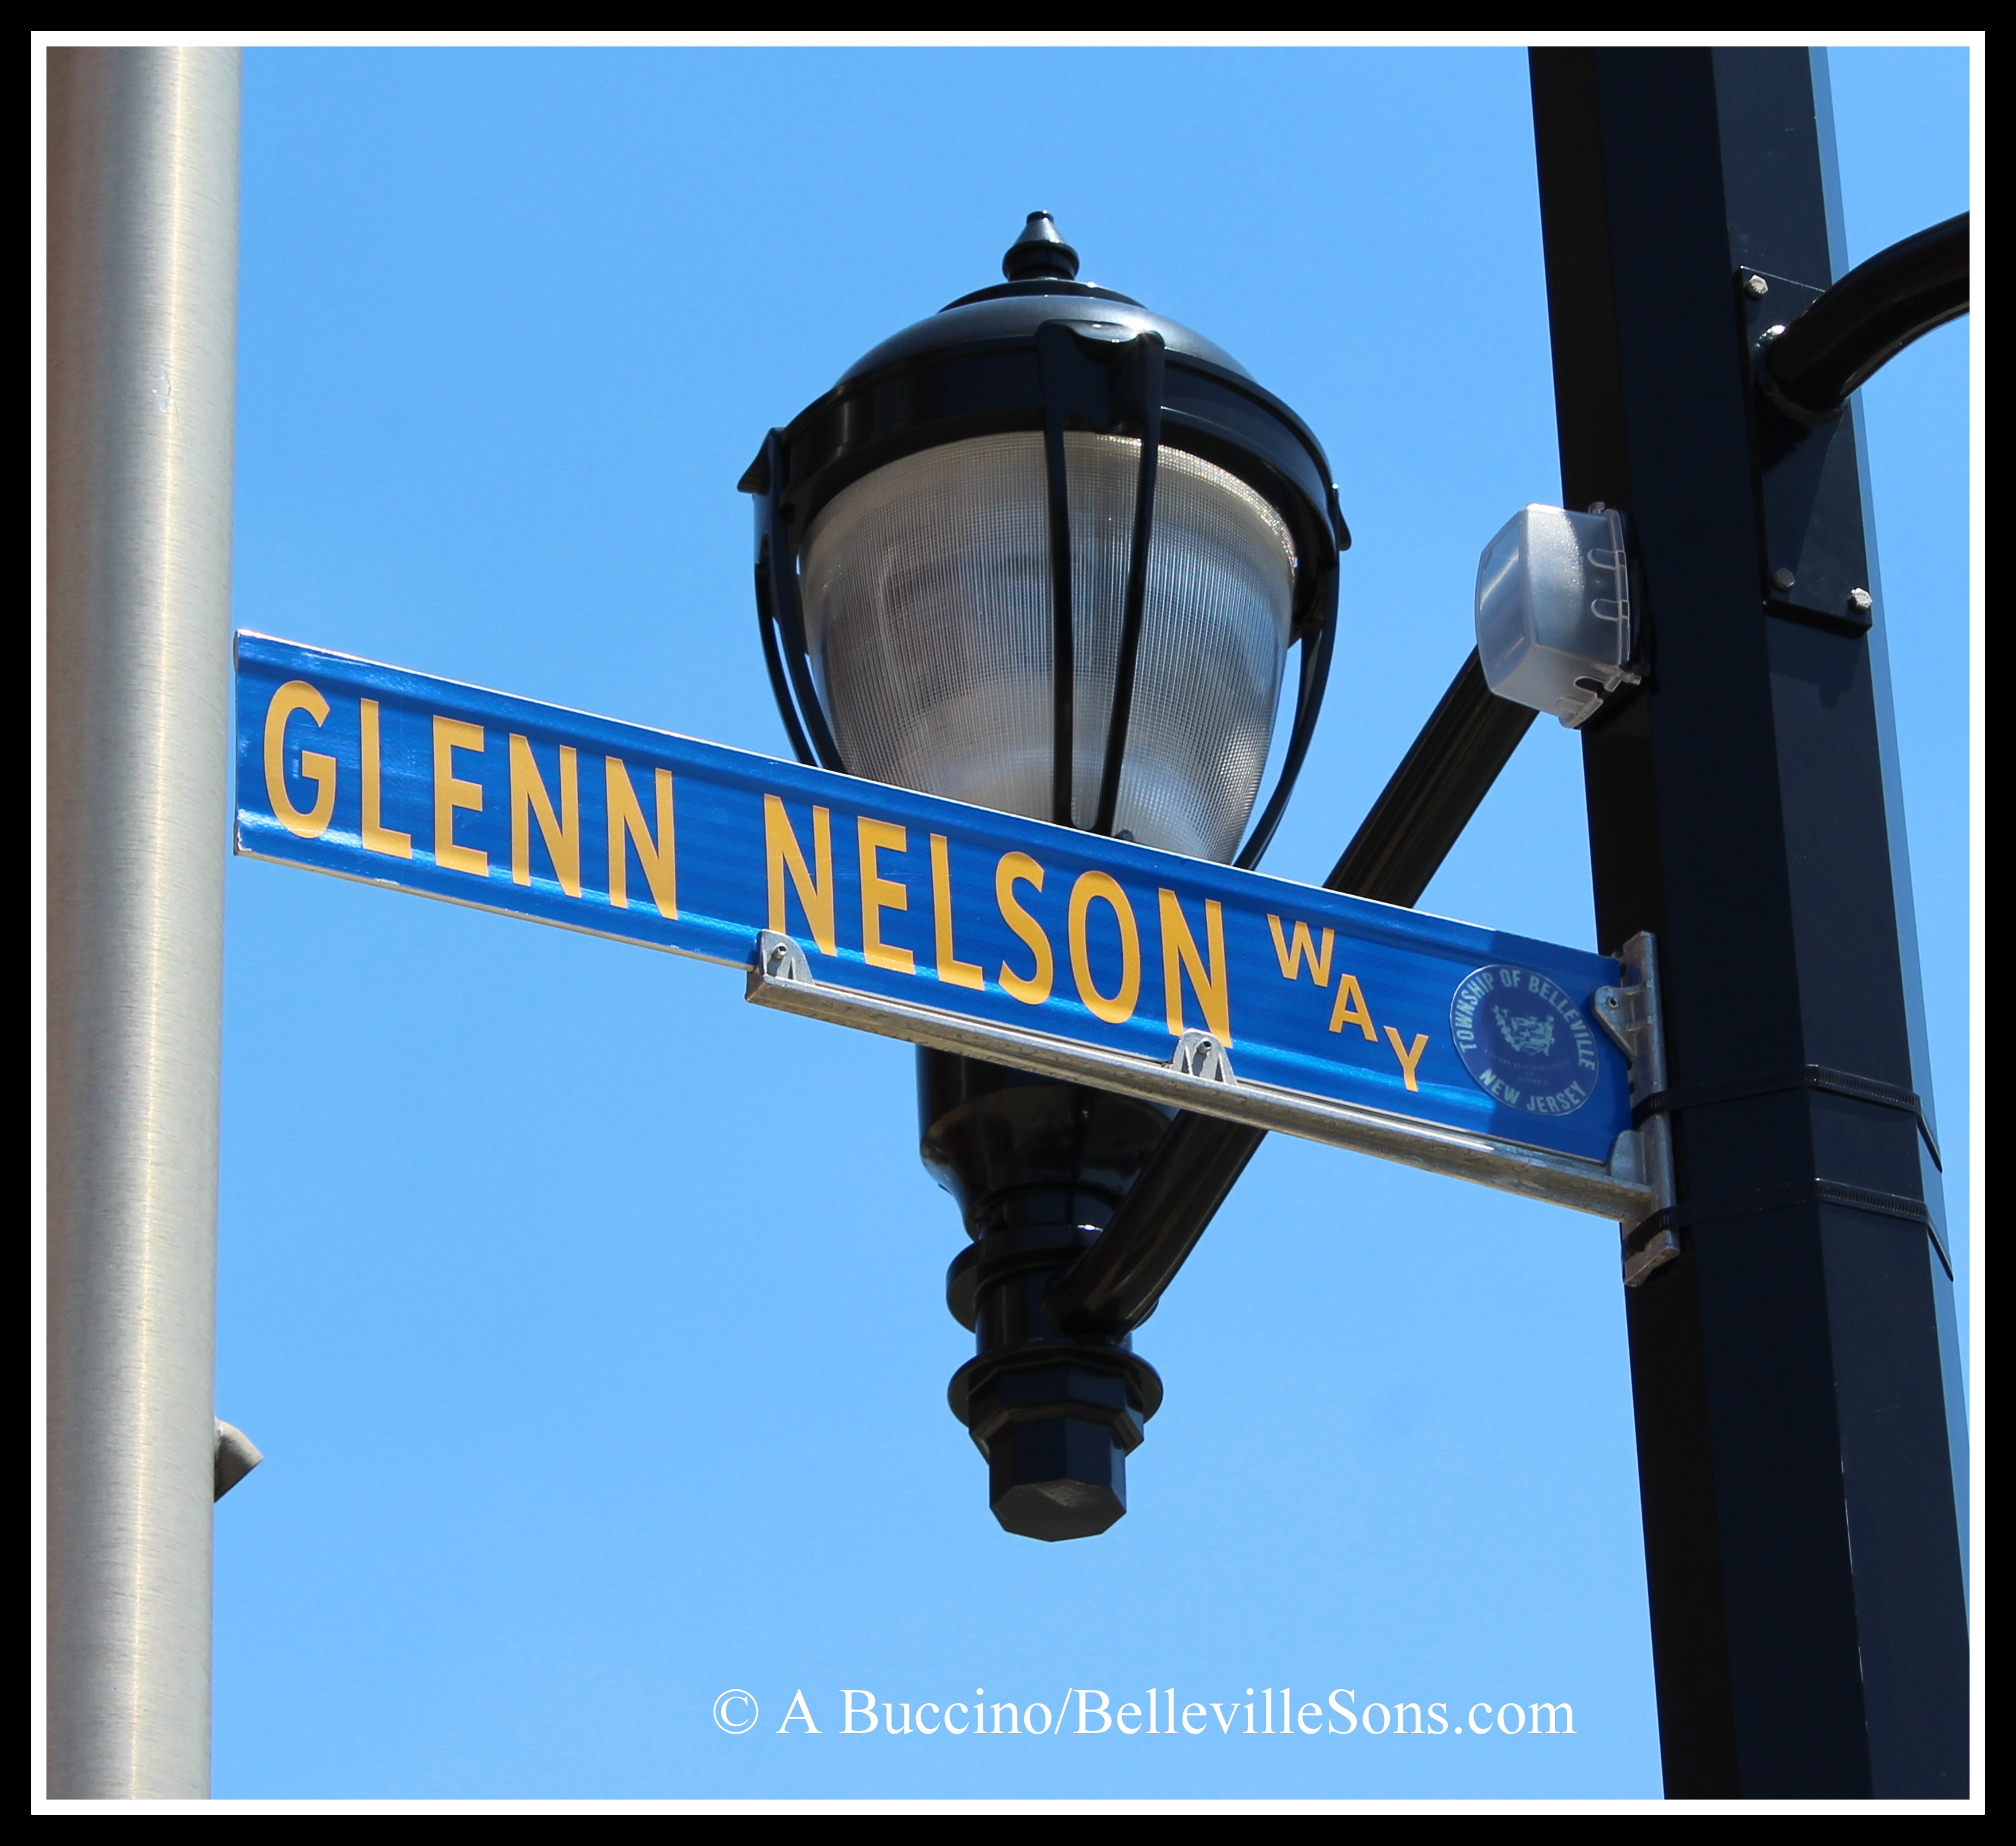 Glenn Nelson Way, Belleville, N.J.